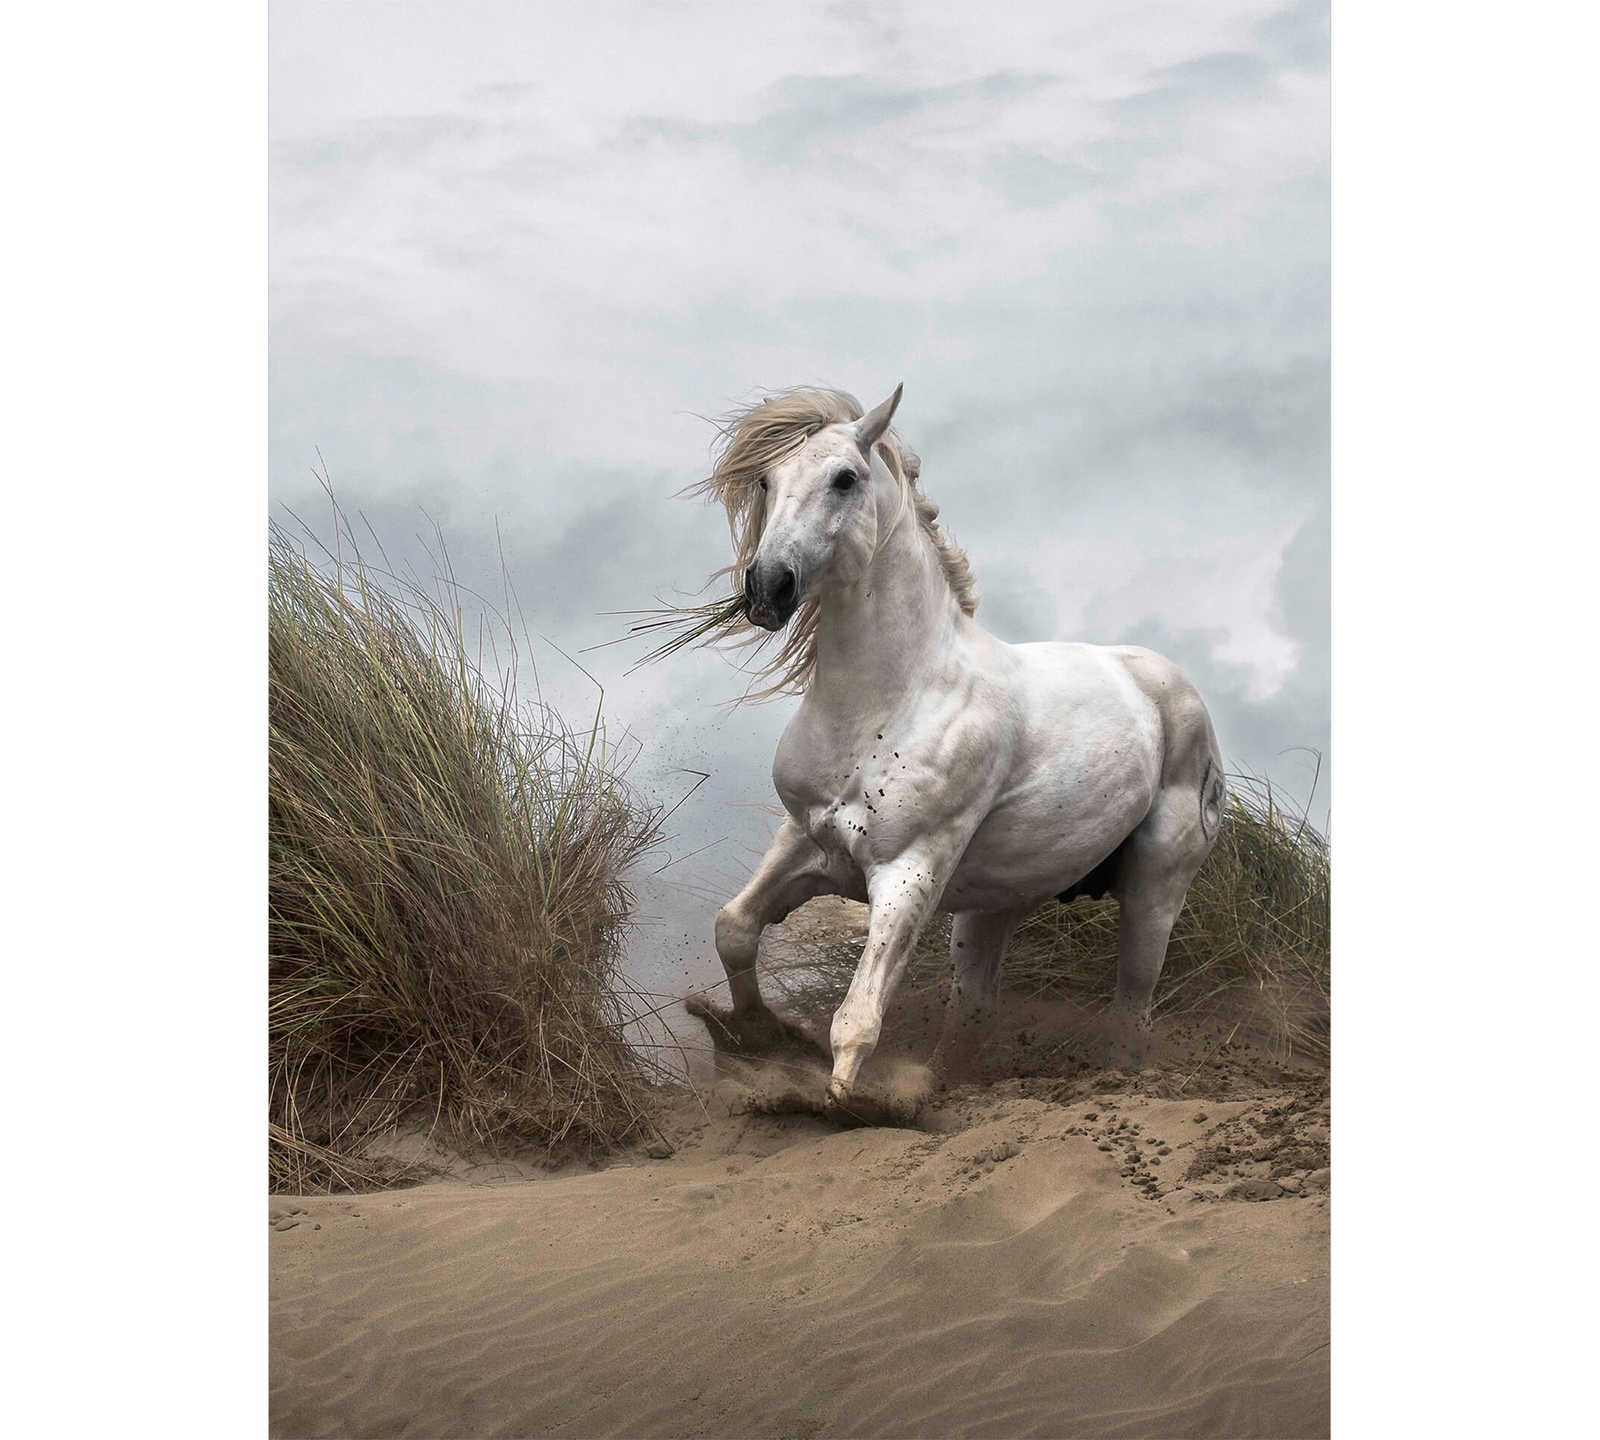         Fototapete Strand Dünen mit Pferd – Weiß, Creme, Grau
    